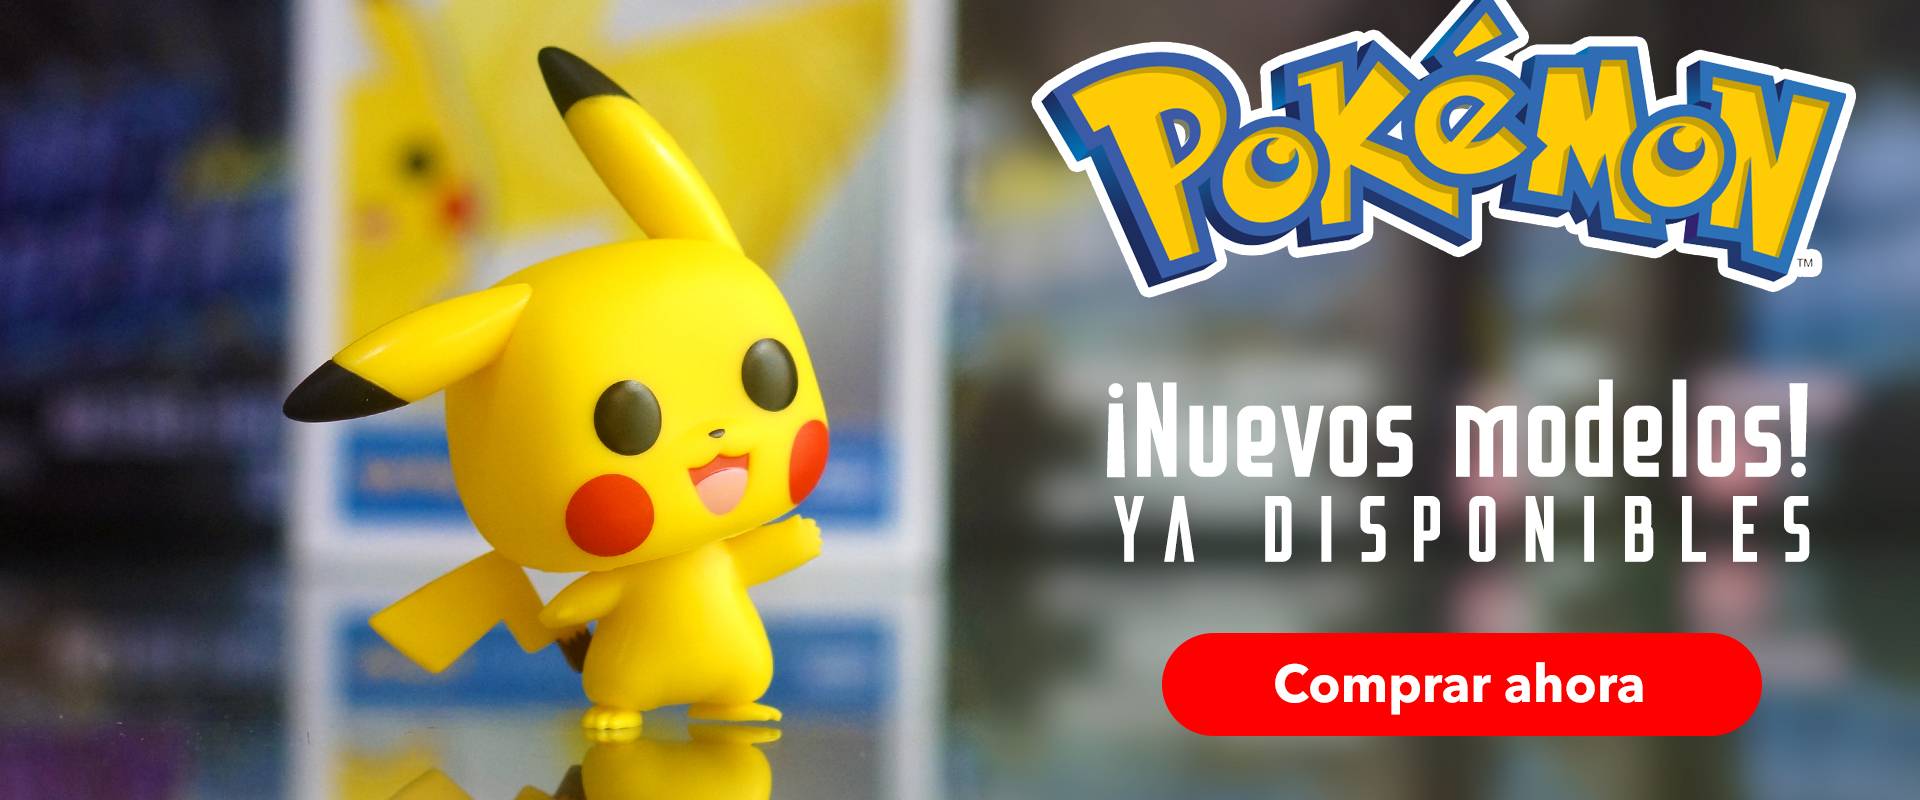 Funko POP de Pokémon en Xalapa